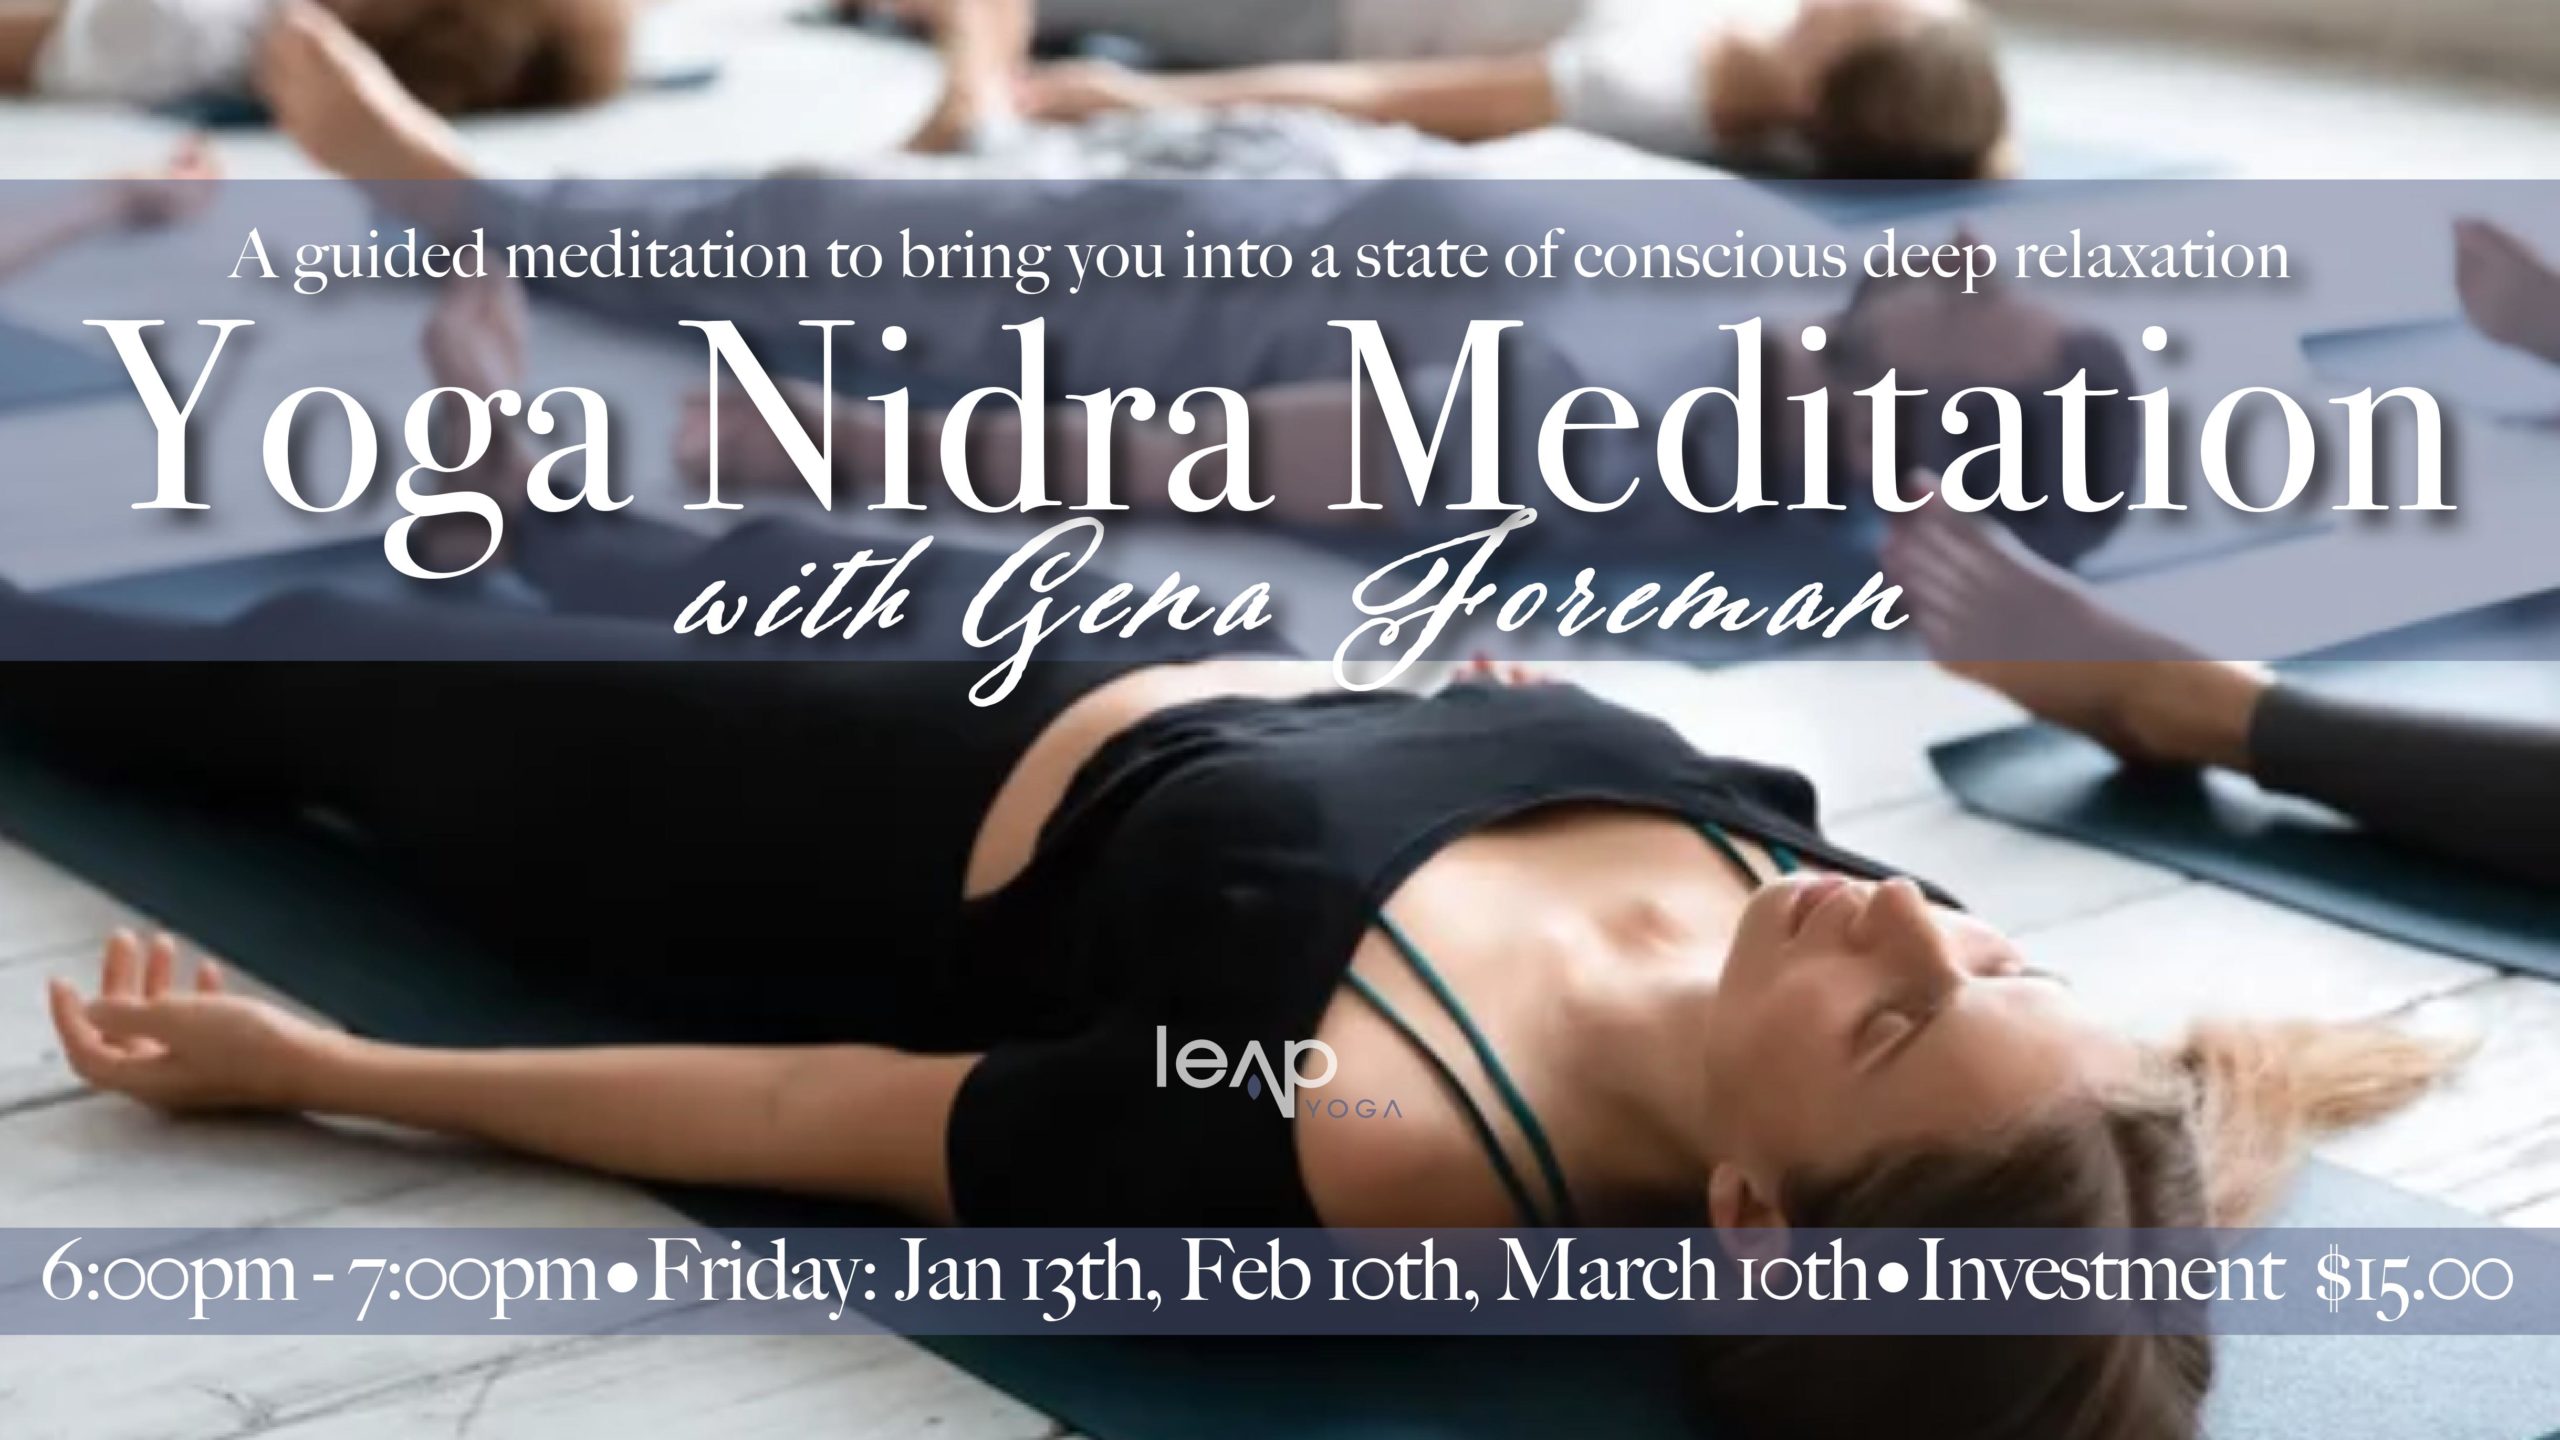 runner's relaxation, Yoga Nidra blissful state, serene post-exercise meditation